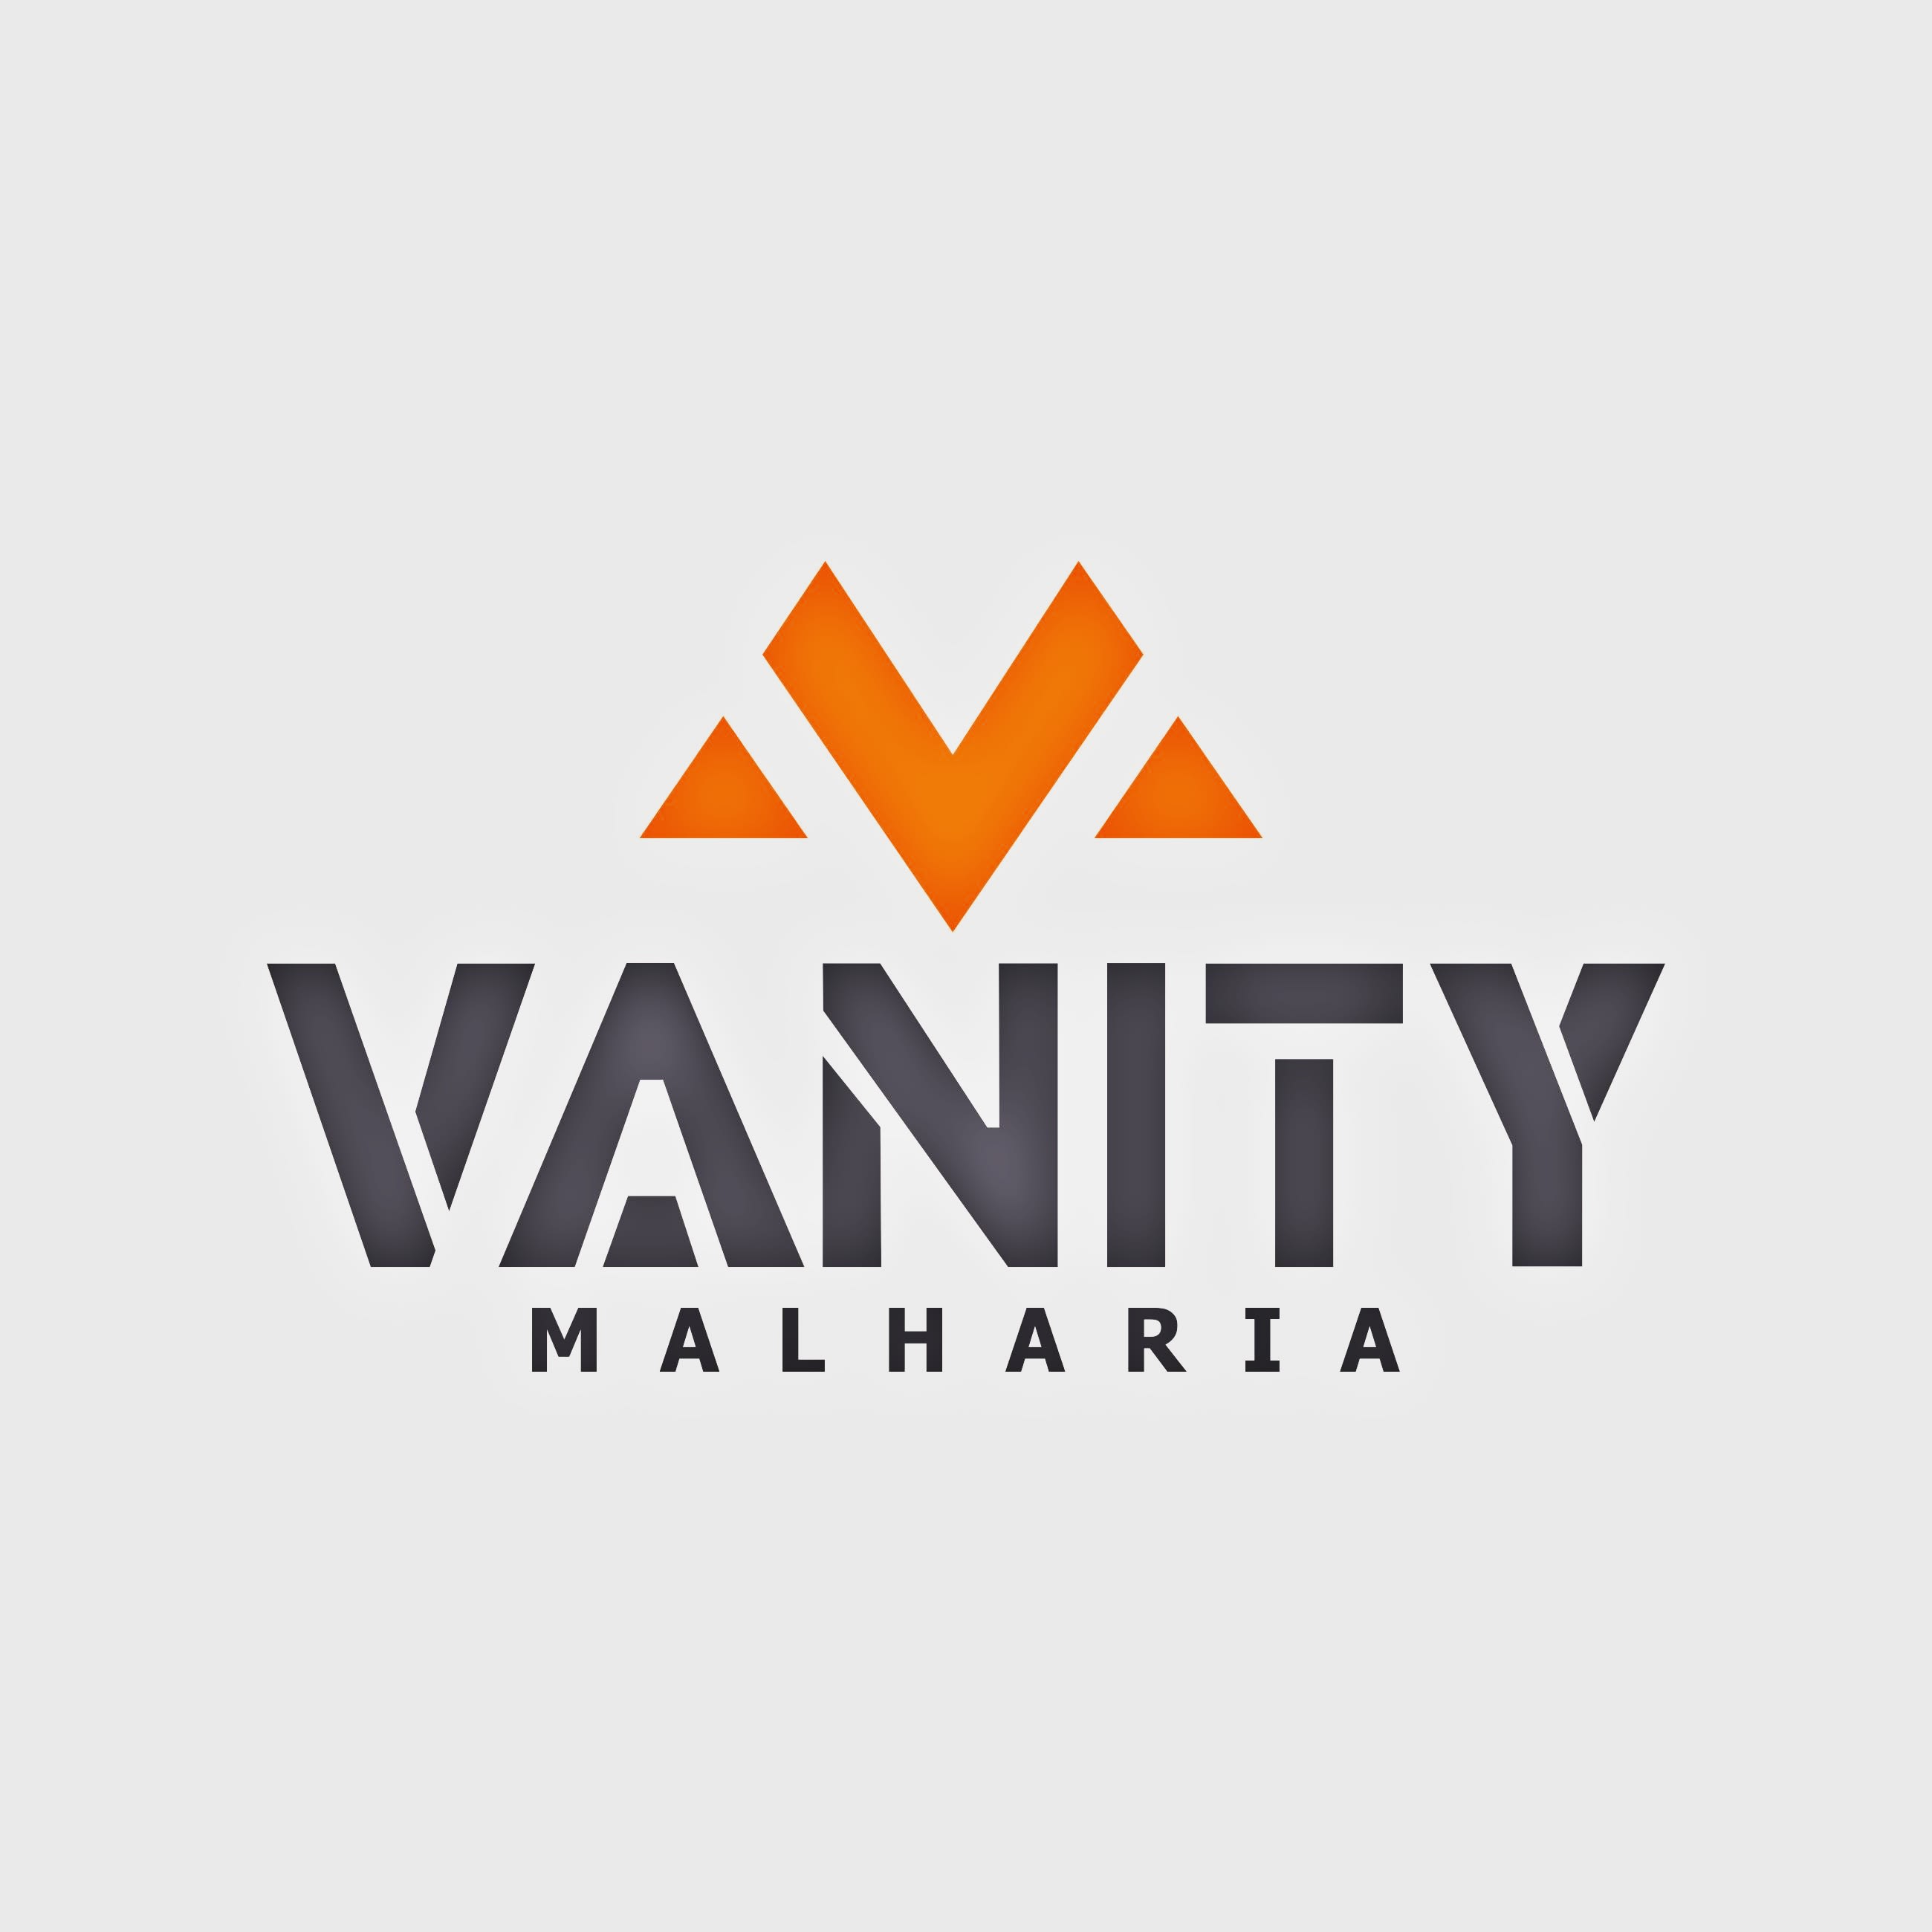 Vanity Malharia